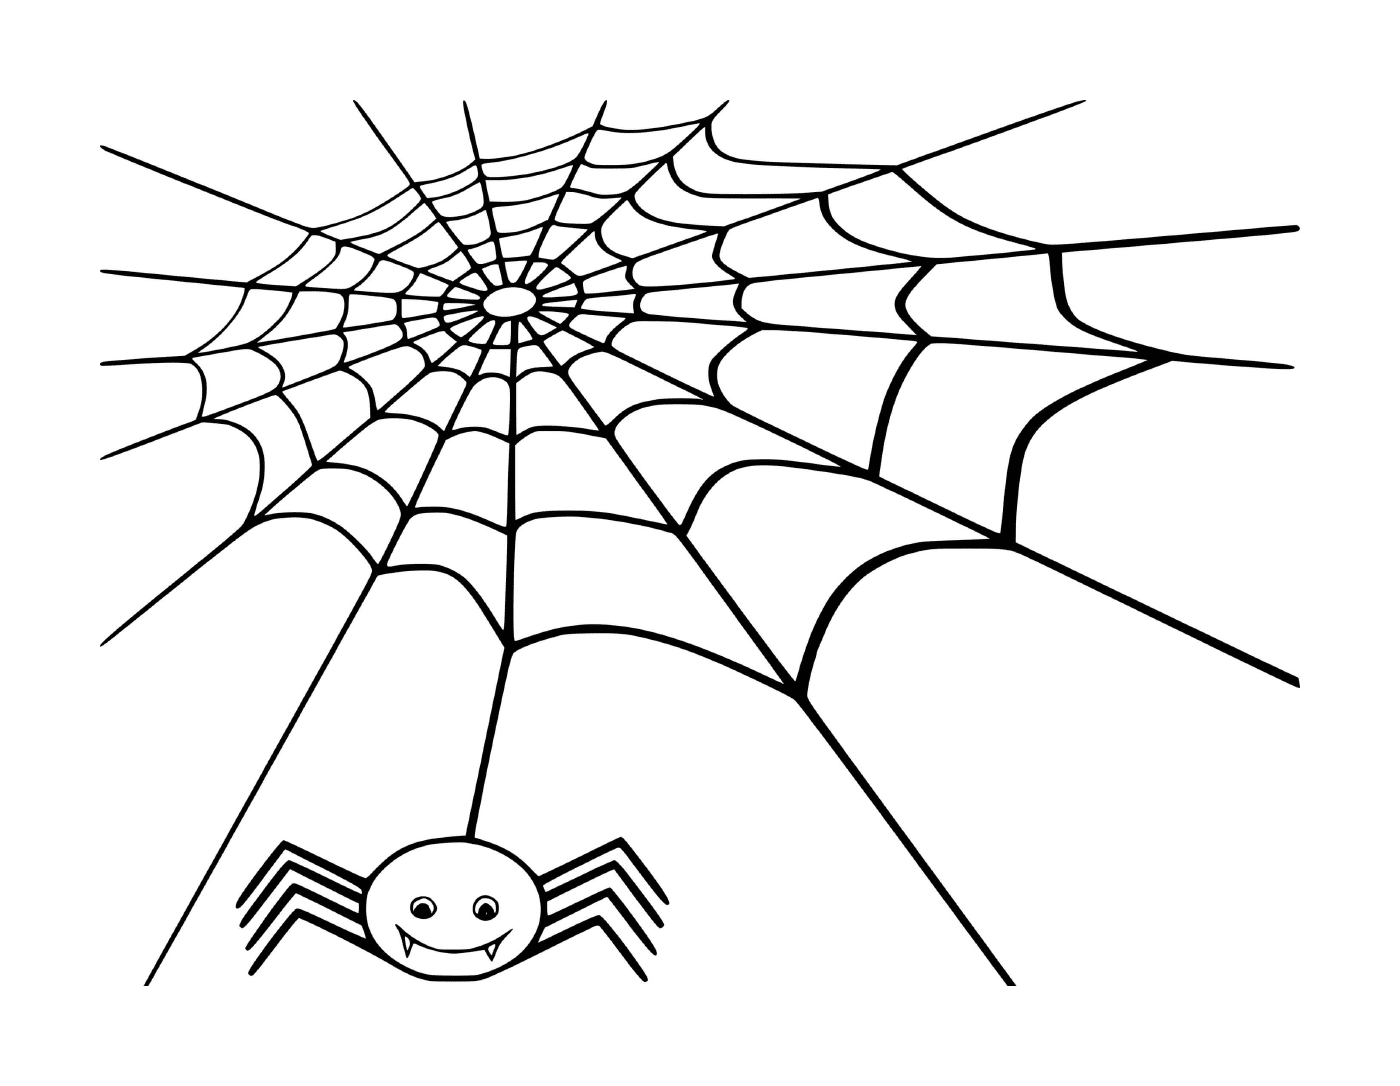  Das Netz einer Spinne, in dem eine Spinne ihre Beute erwartet 